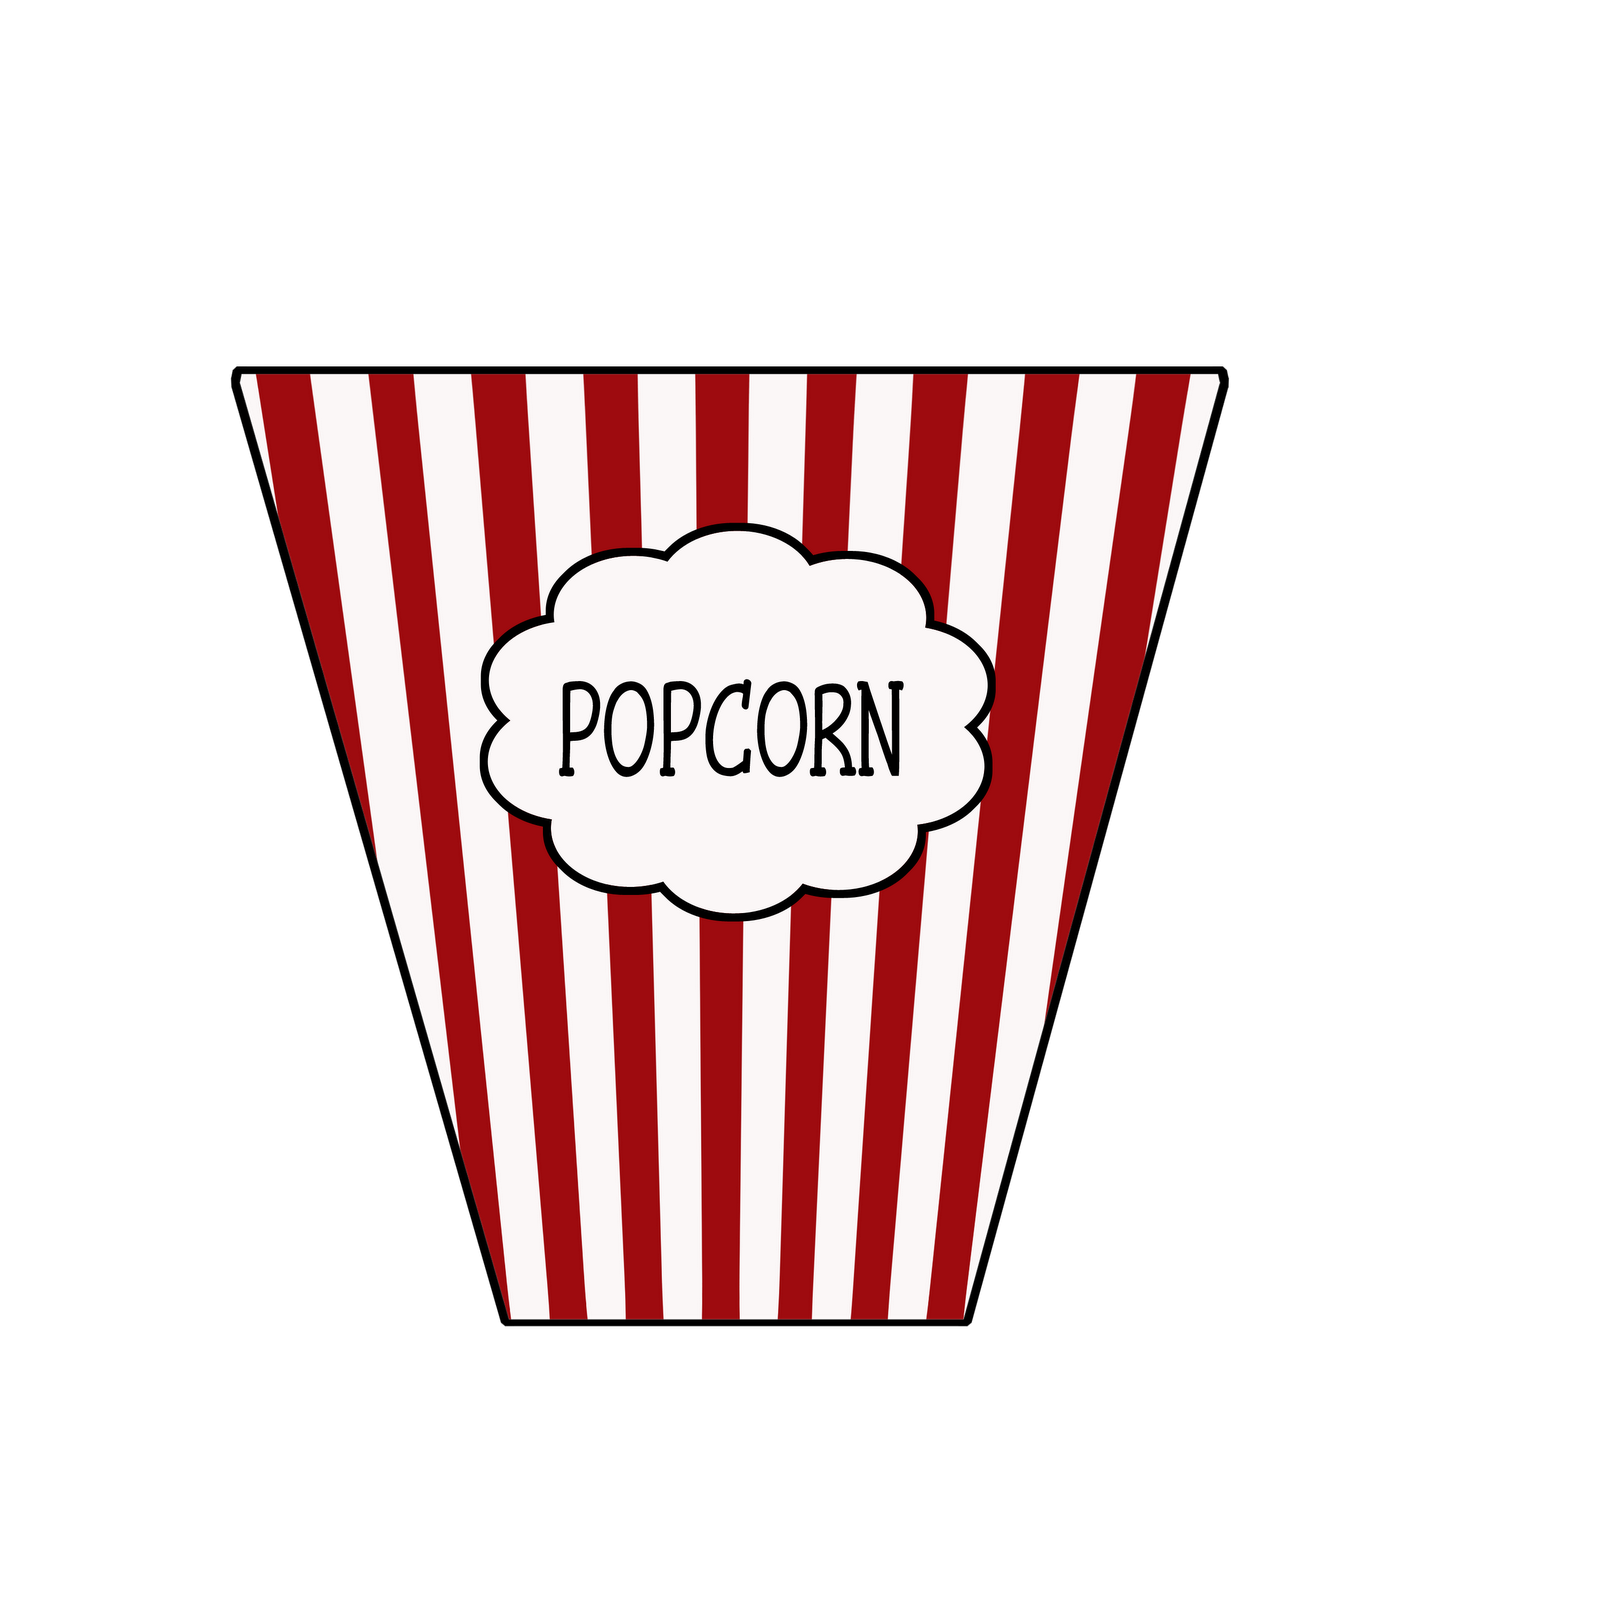 Popcorn bag clipart